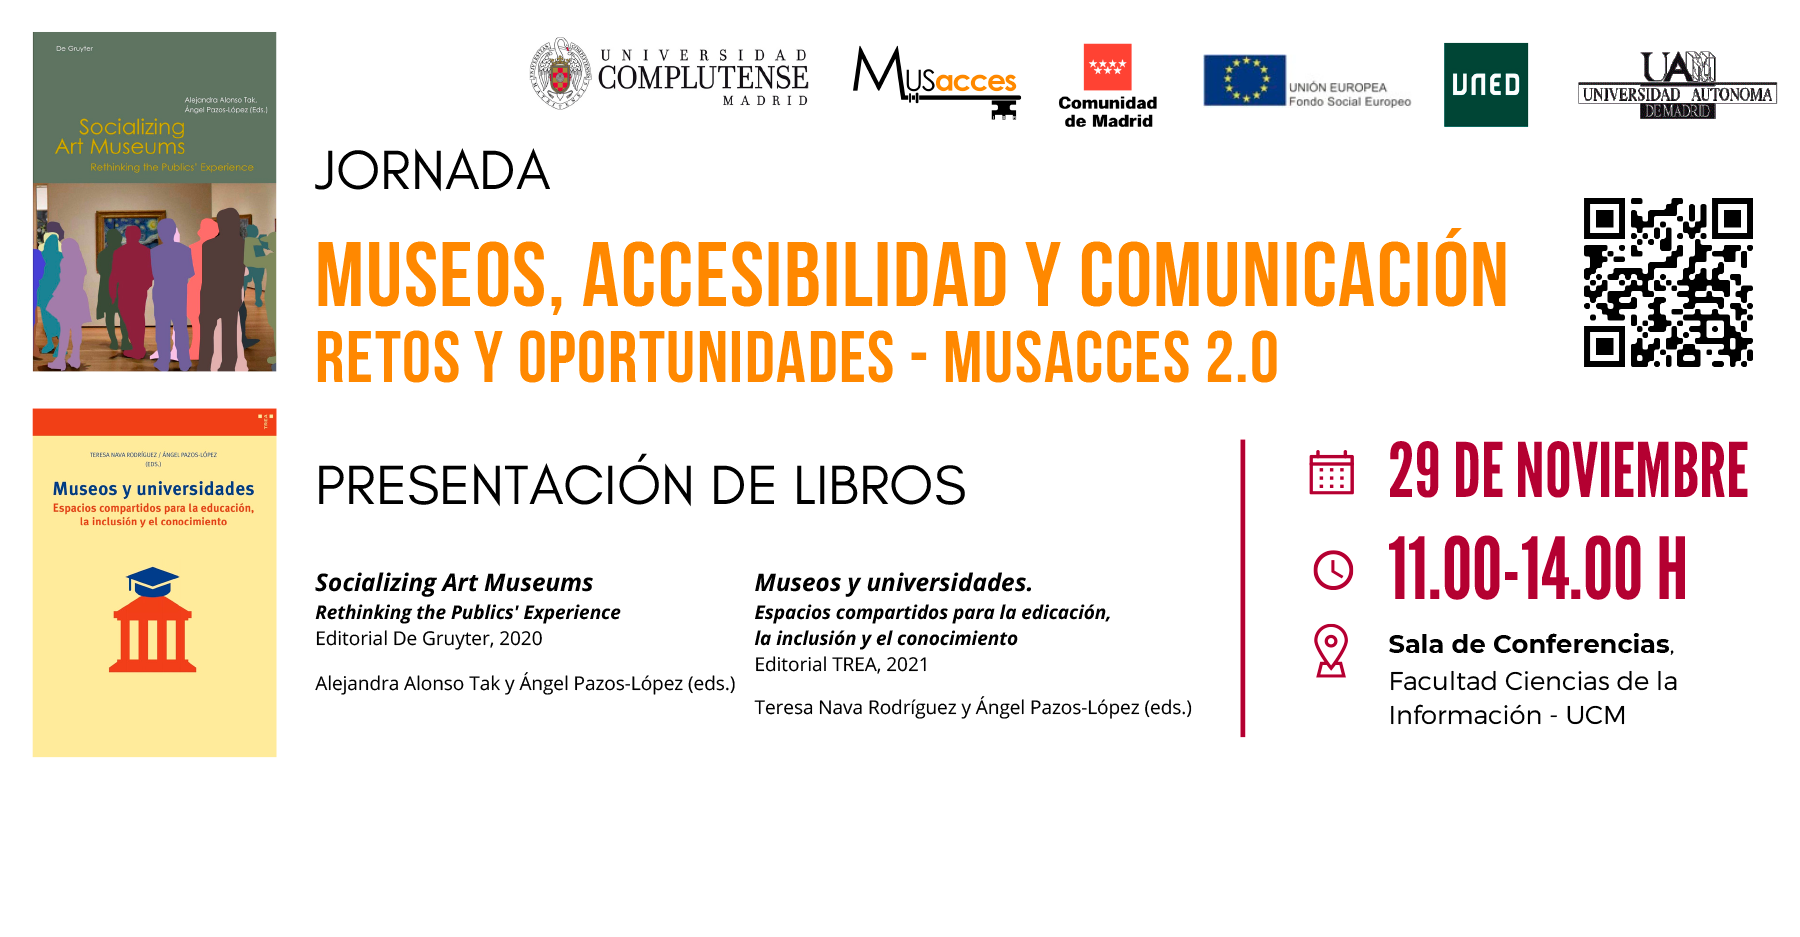 Museos, accesibilidad y comunicación. Retos y oportunidades MUSACCES 2.0